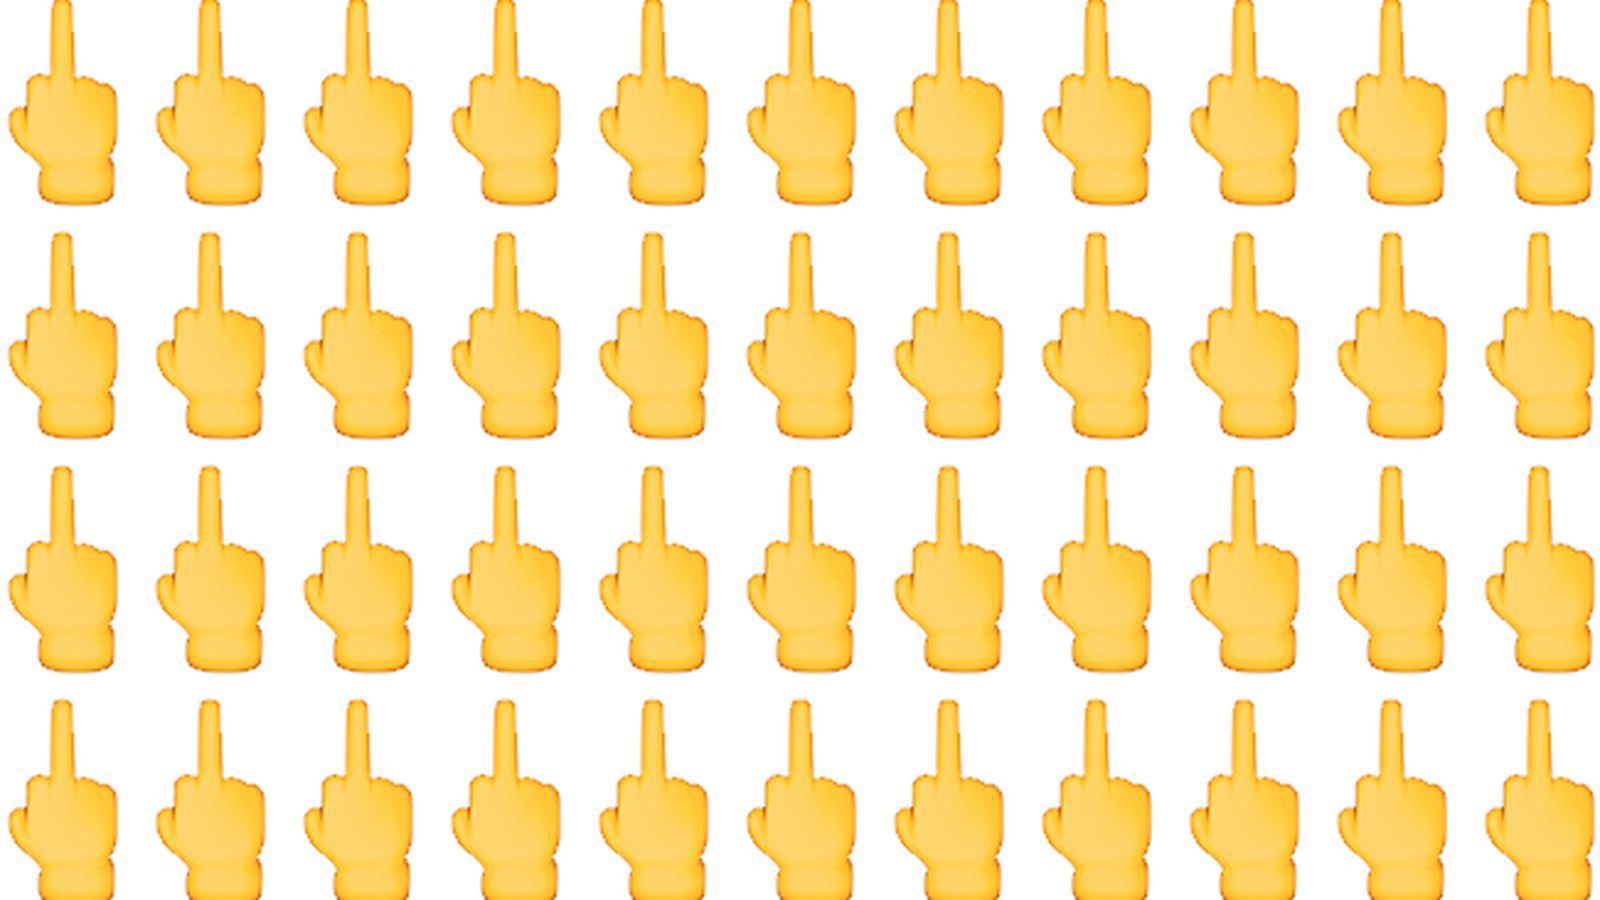 middle_finger_emoji.0.0.jpg